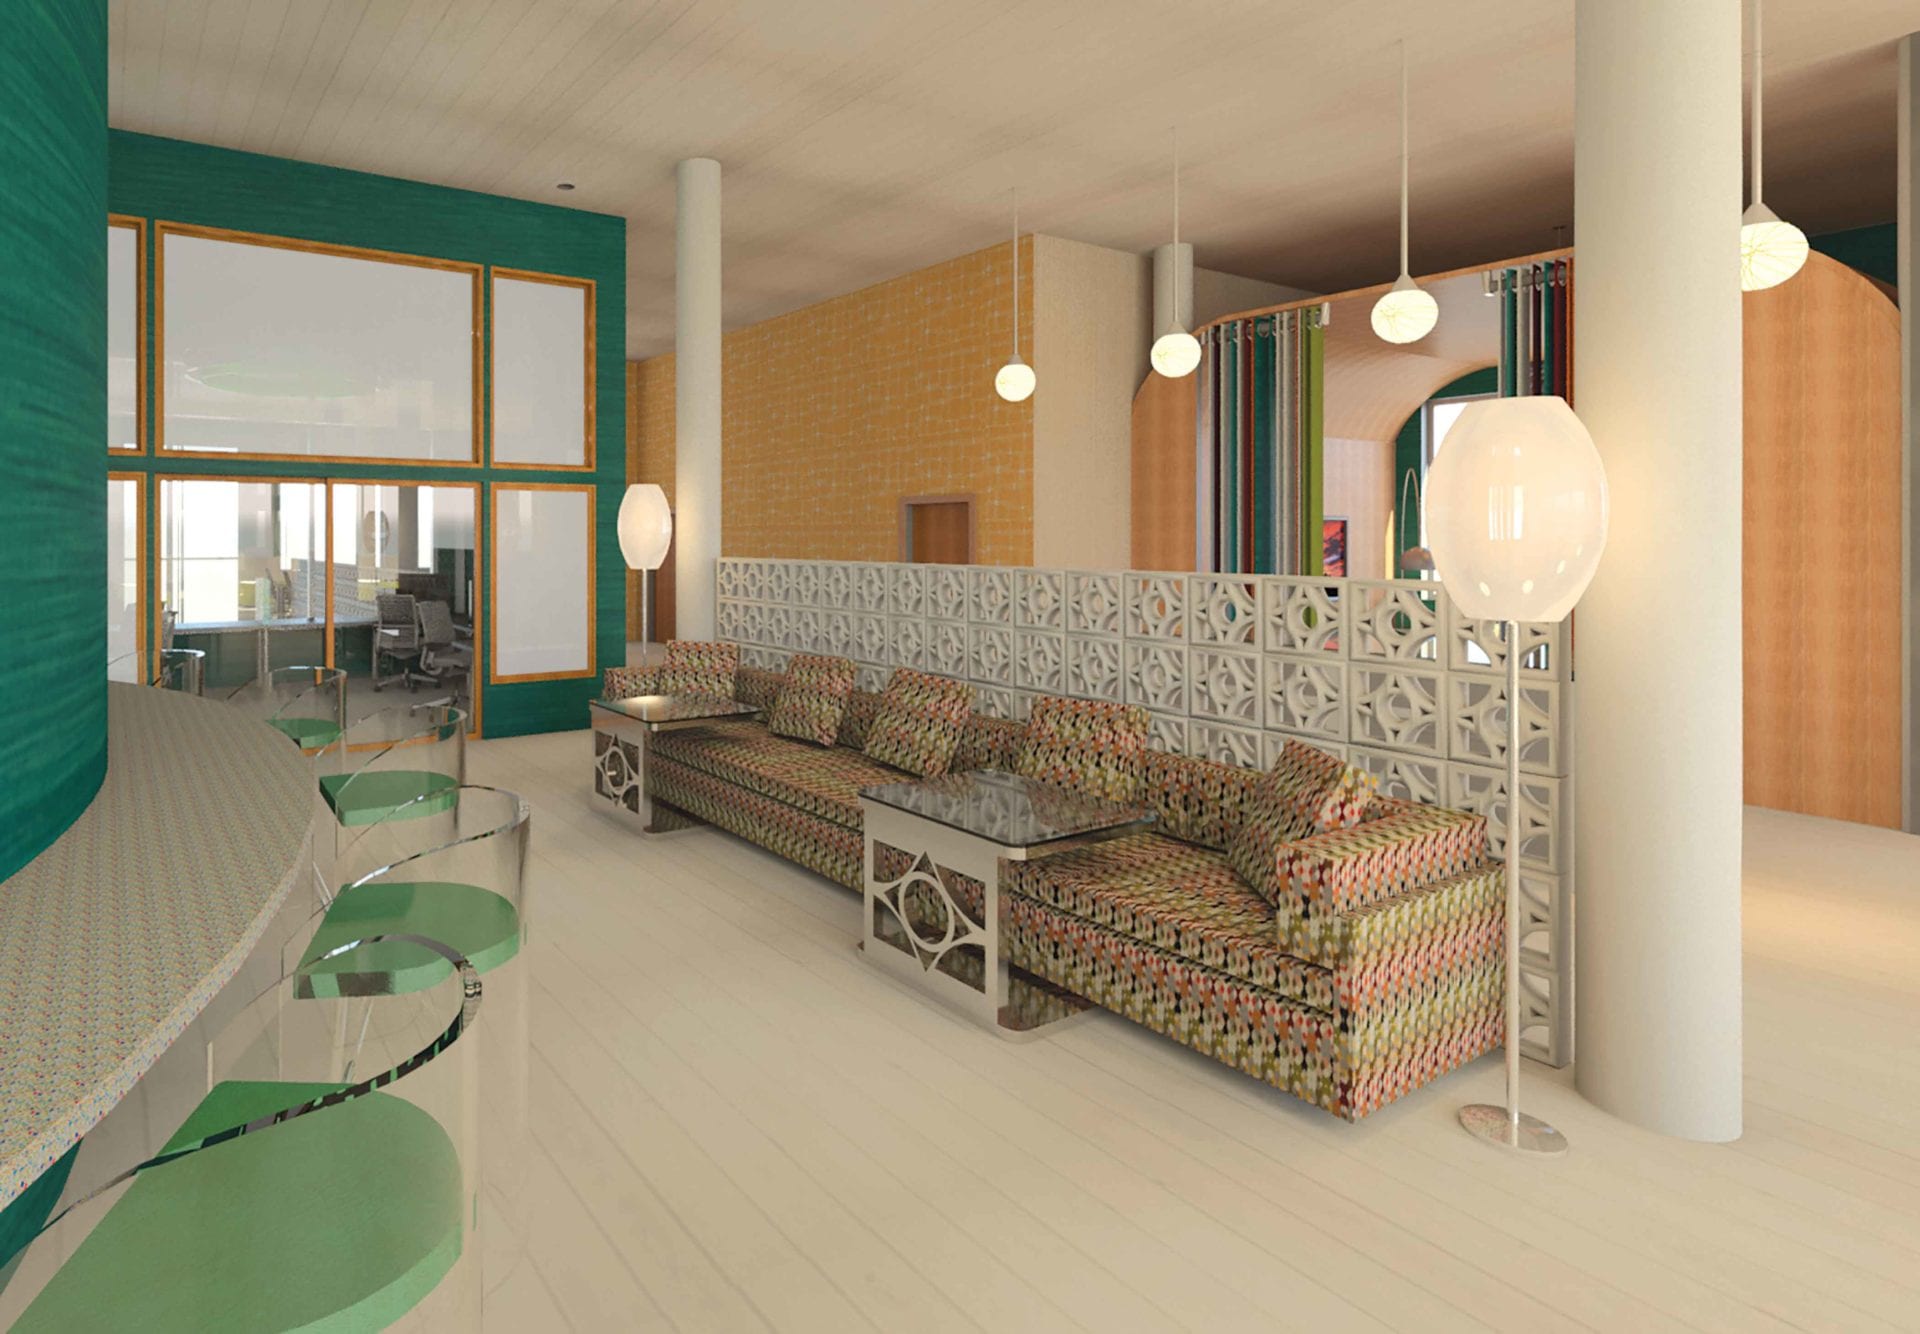 Interior Design Villa Maria College Take Your Talent Further